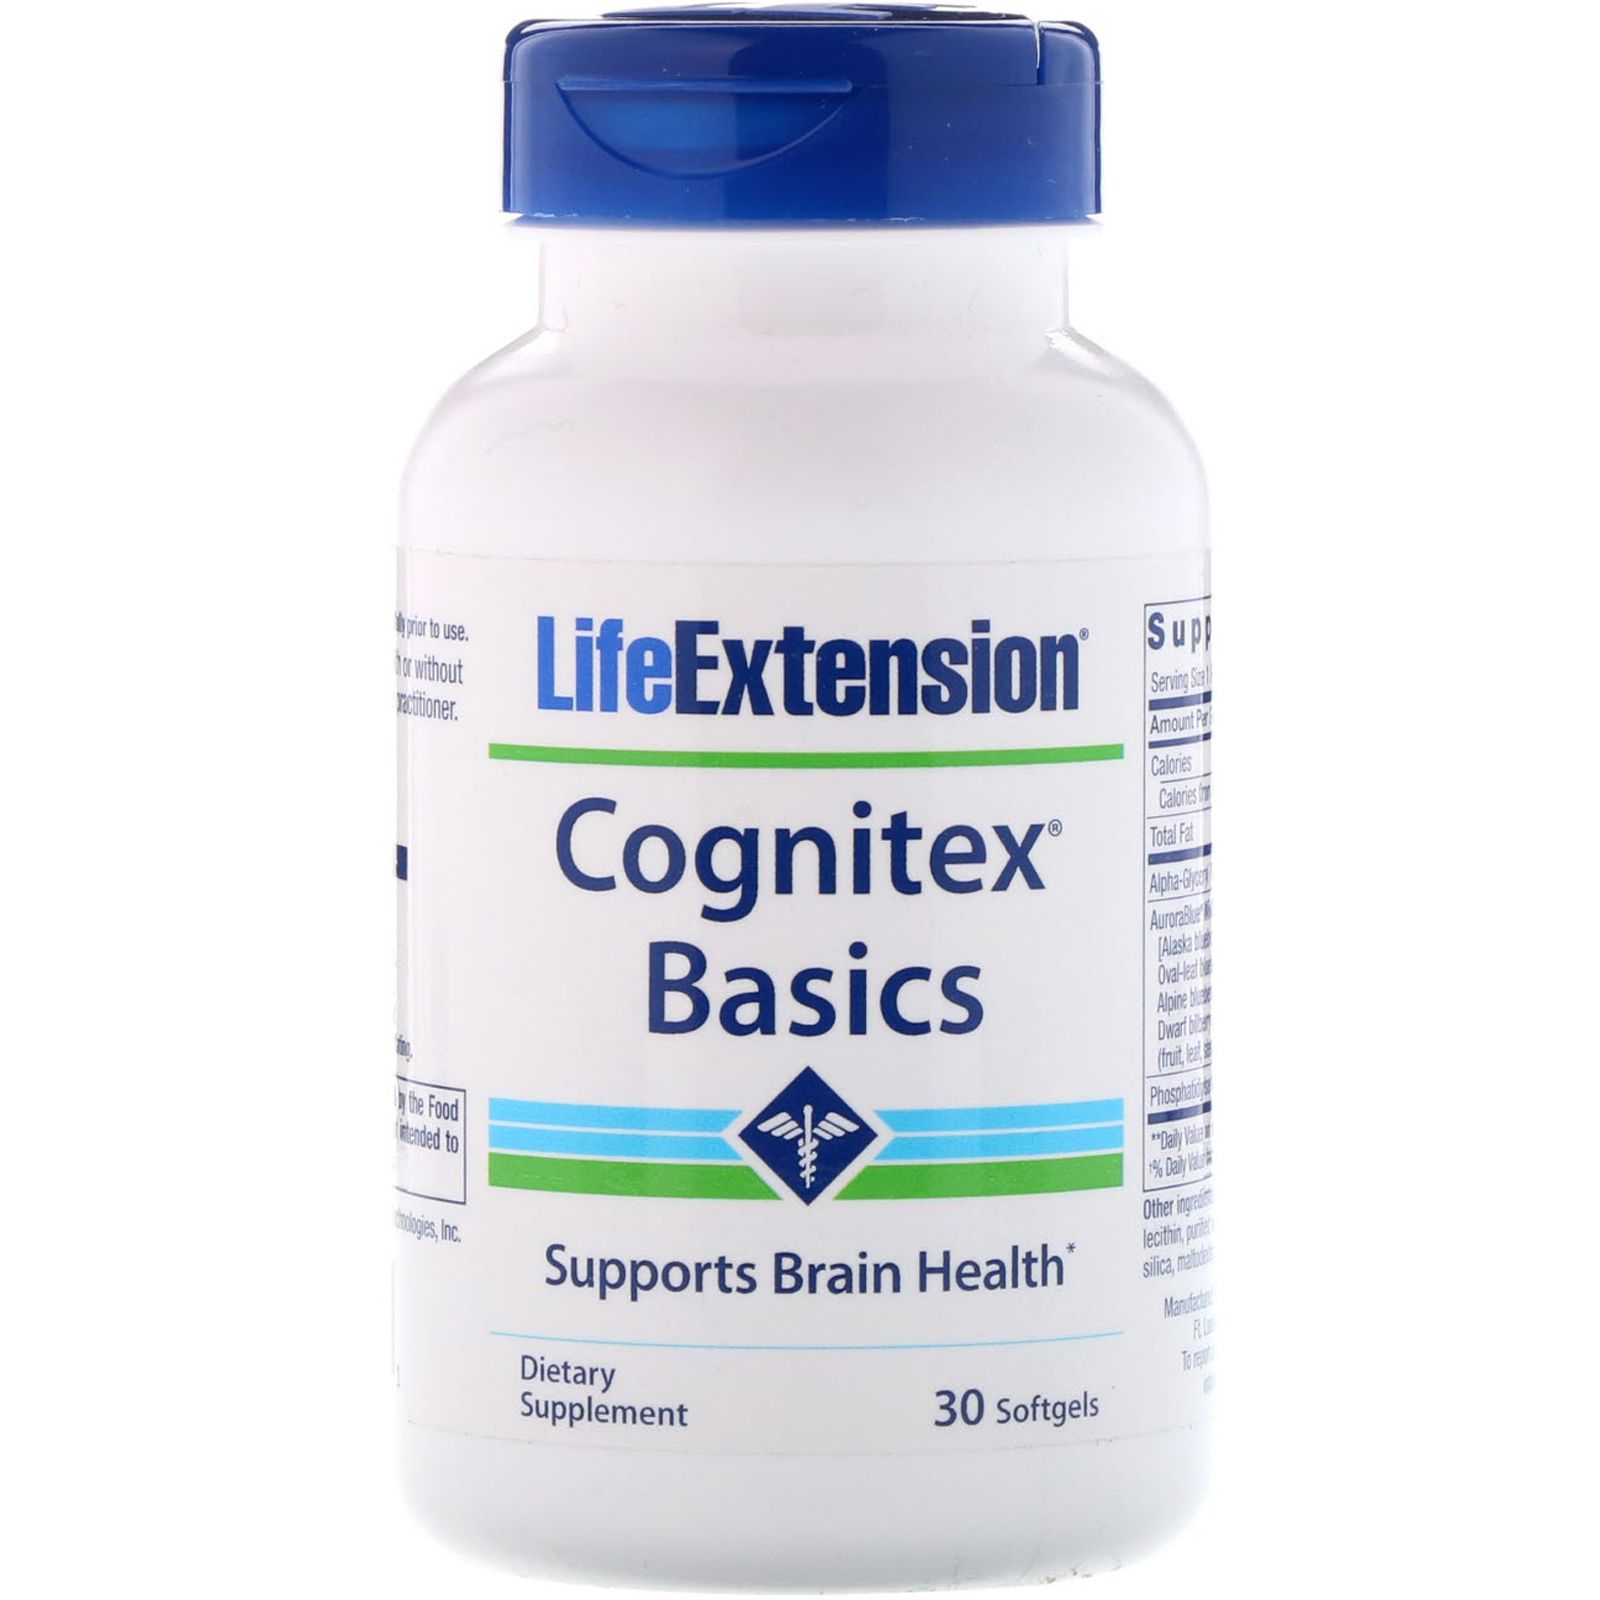 Life Extension Cognitex Basics 30 Softgels поддержание оптимального здоровья мозга cognitex basics 30 капсул life extension